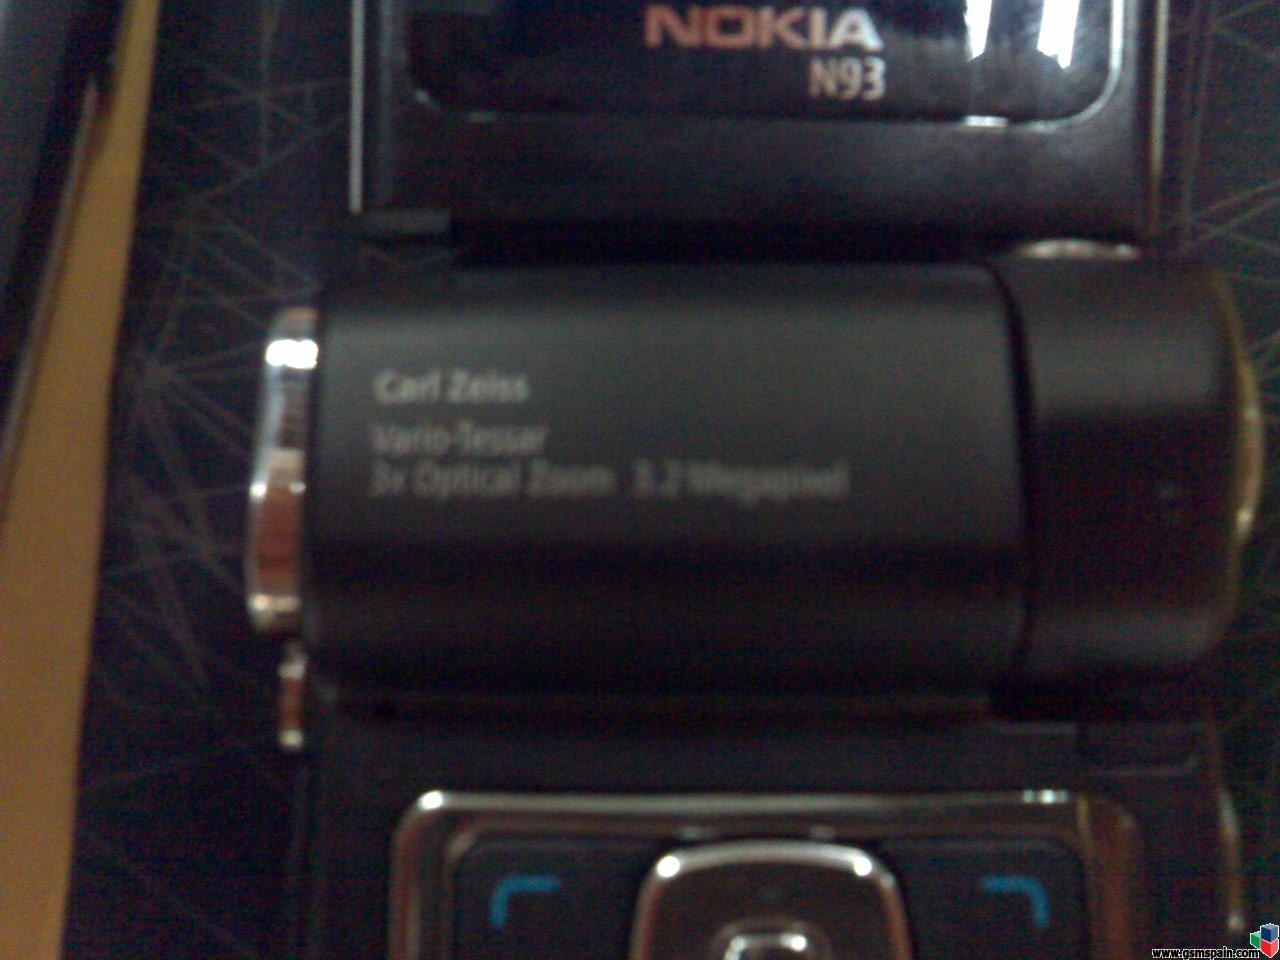 Mini Review N93